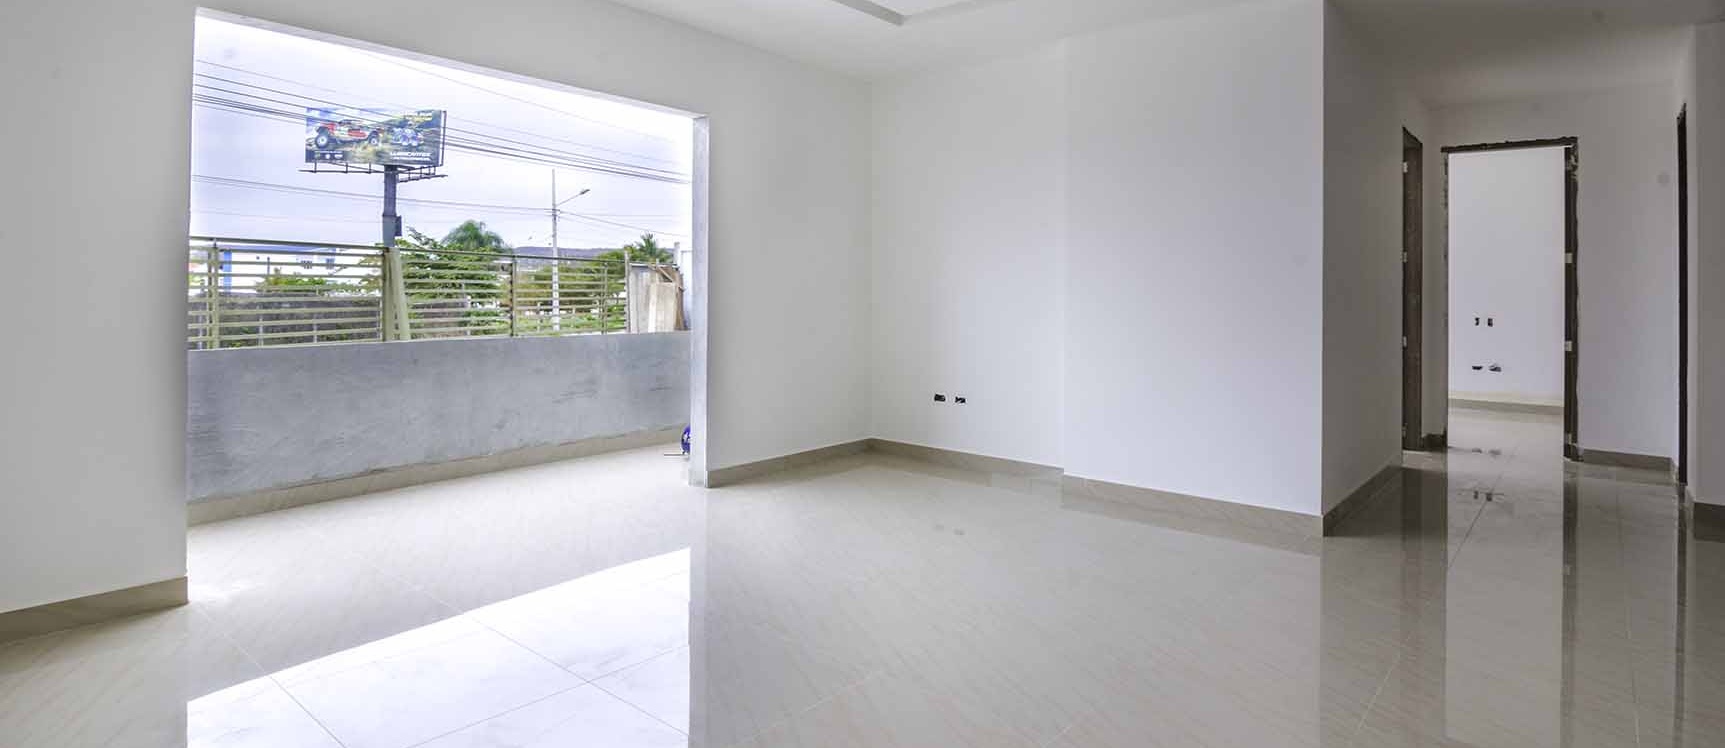 GeoBienes - Departamento en venta frente al mar Condominio Nigon en Capaes Santa Elena - Plusvalia Guayaquil Casas de venta y alquiler Inmobiliaria Ecuador